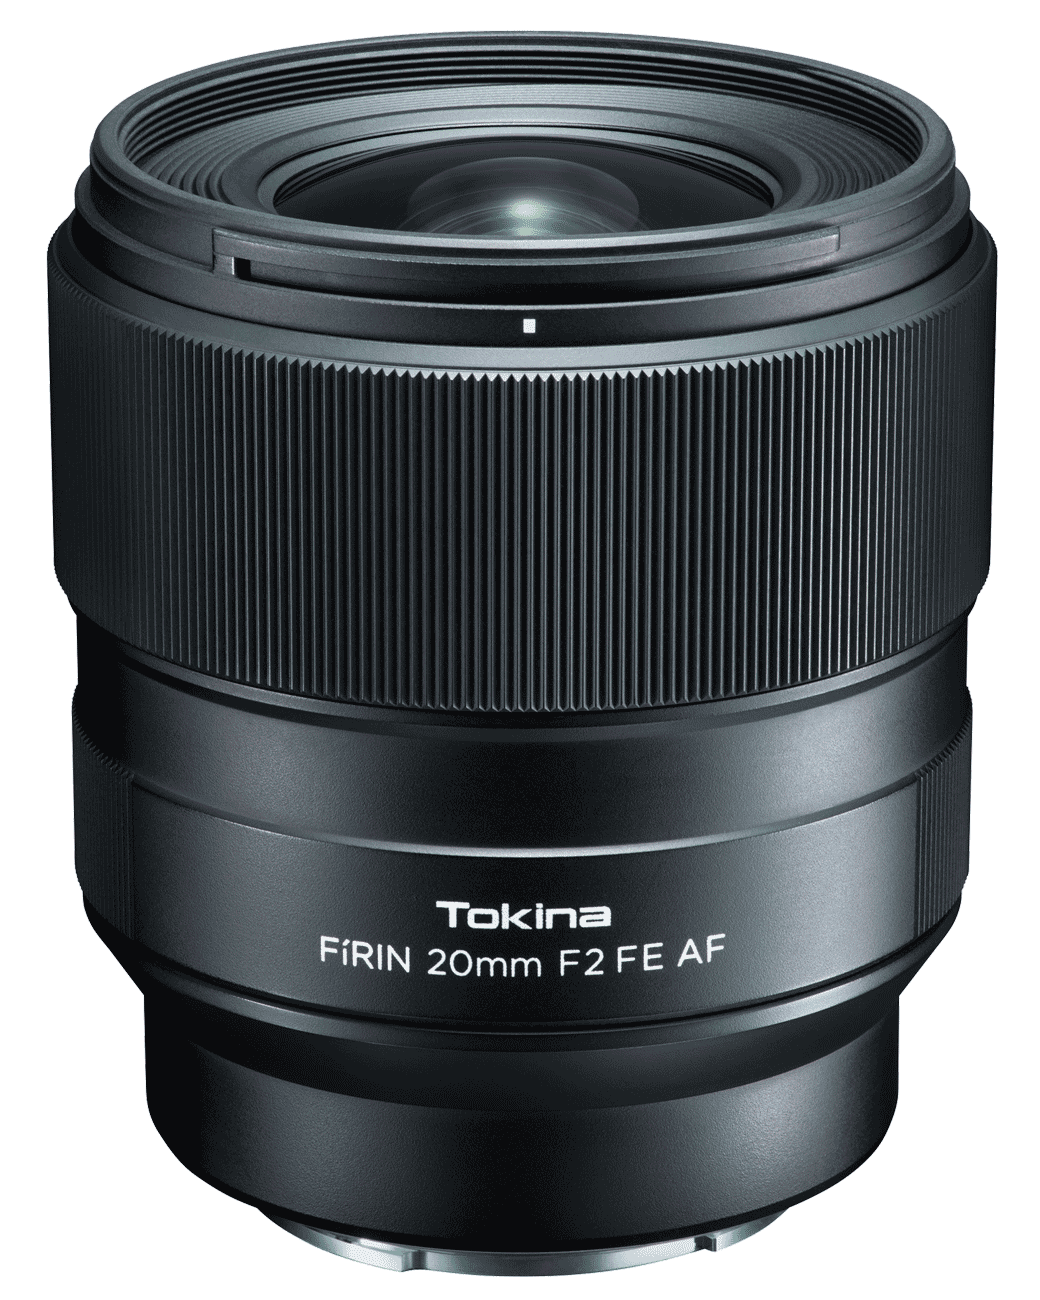 Tokina FIRIN 20mm F2 FE AF для Sony